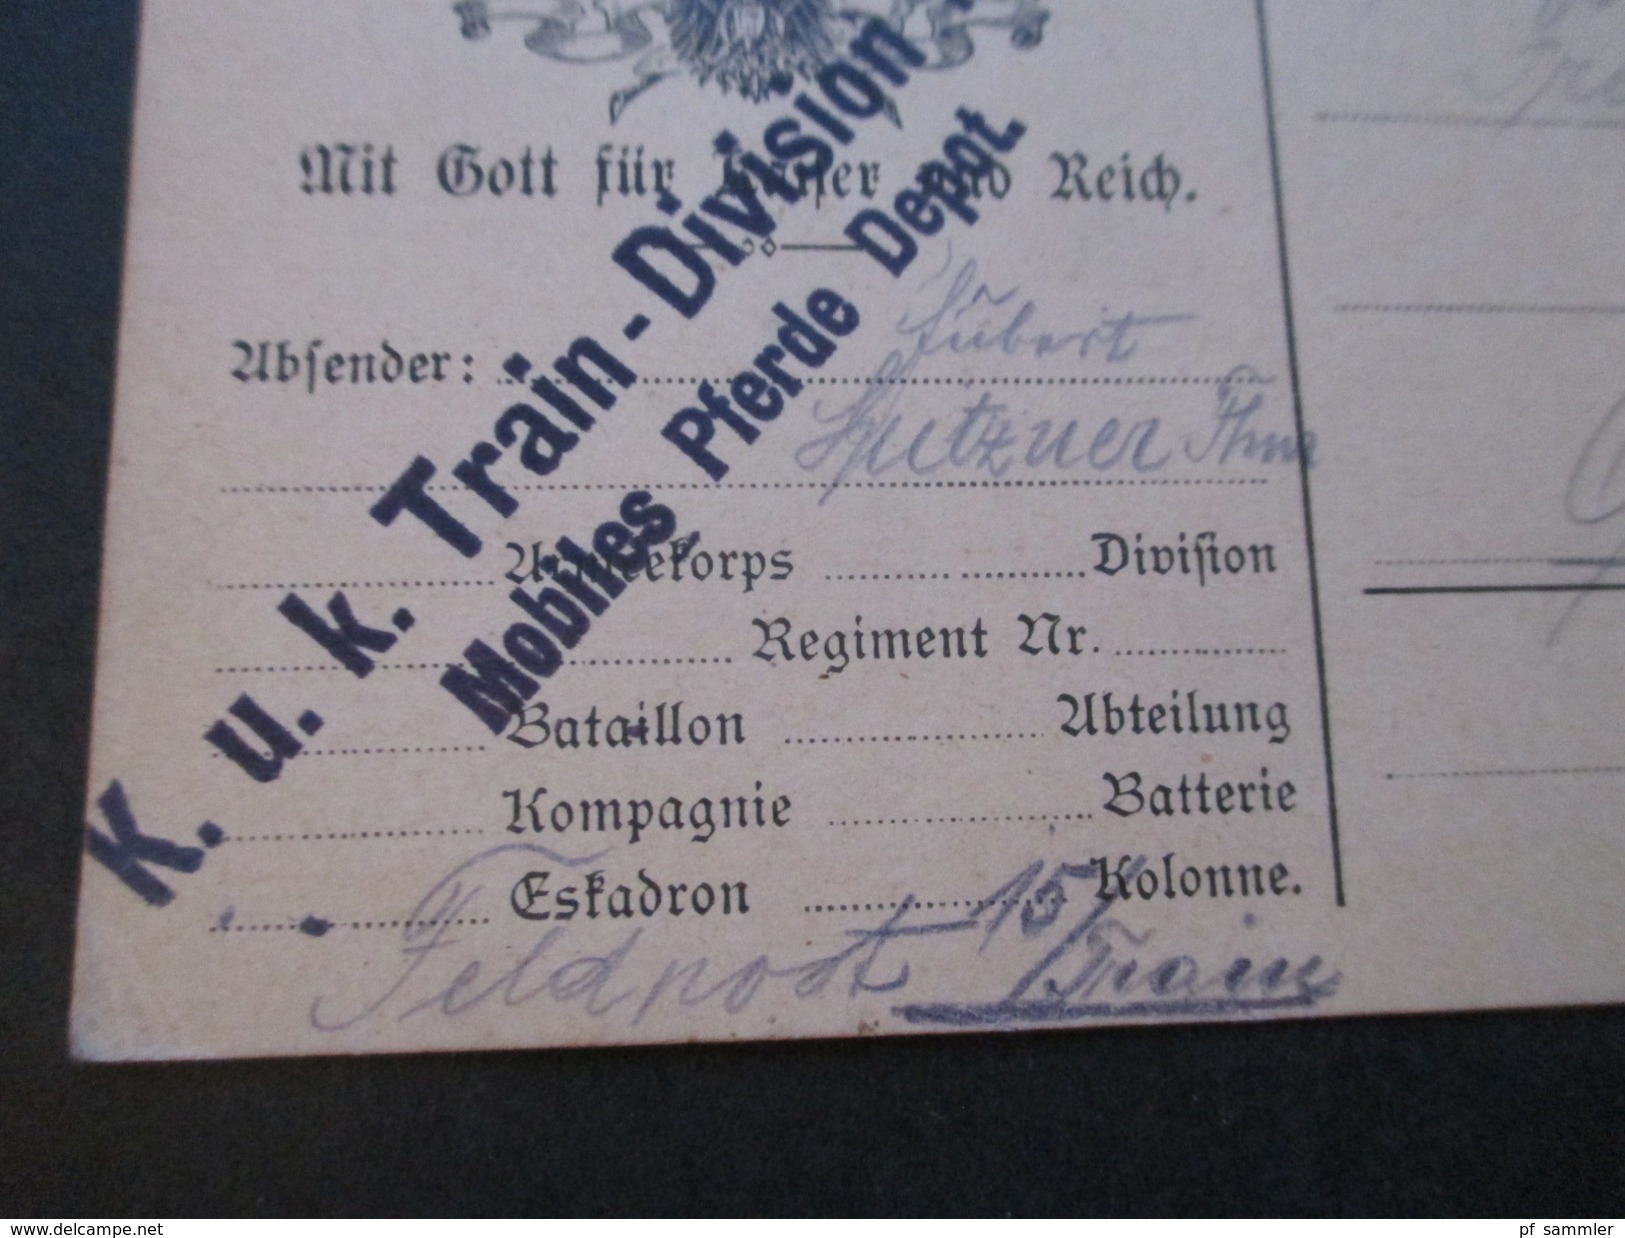 Österreich 1914 Feldpostkarte Mit Gott Für Kaiser Und Reich. K.u.K. Train Division Nr. 2 Mobiles Pferde Depot - Briefe U. Dokumente